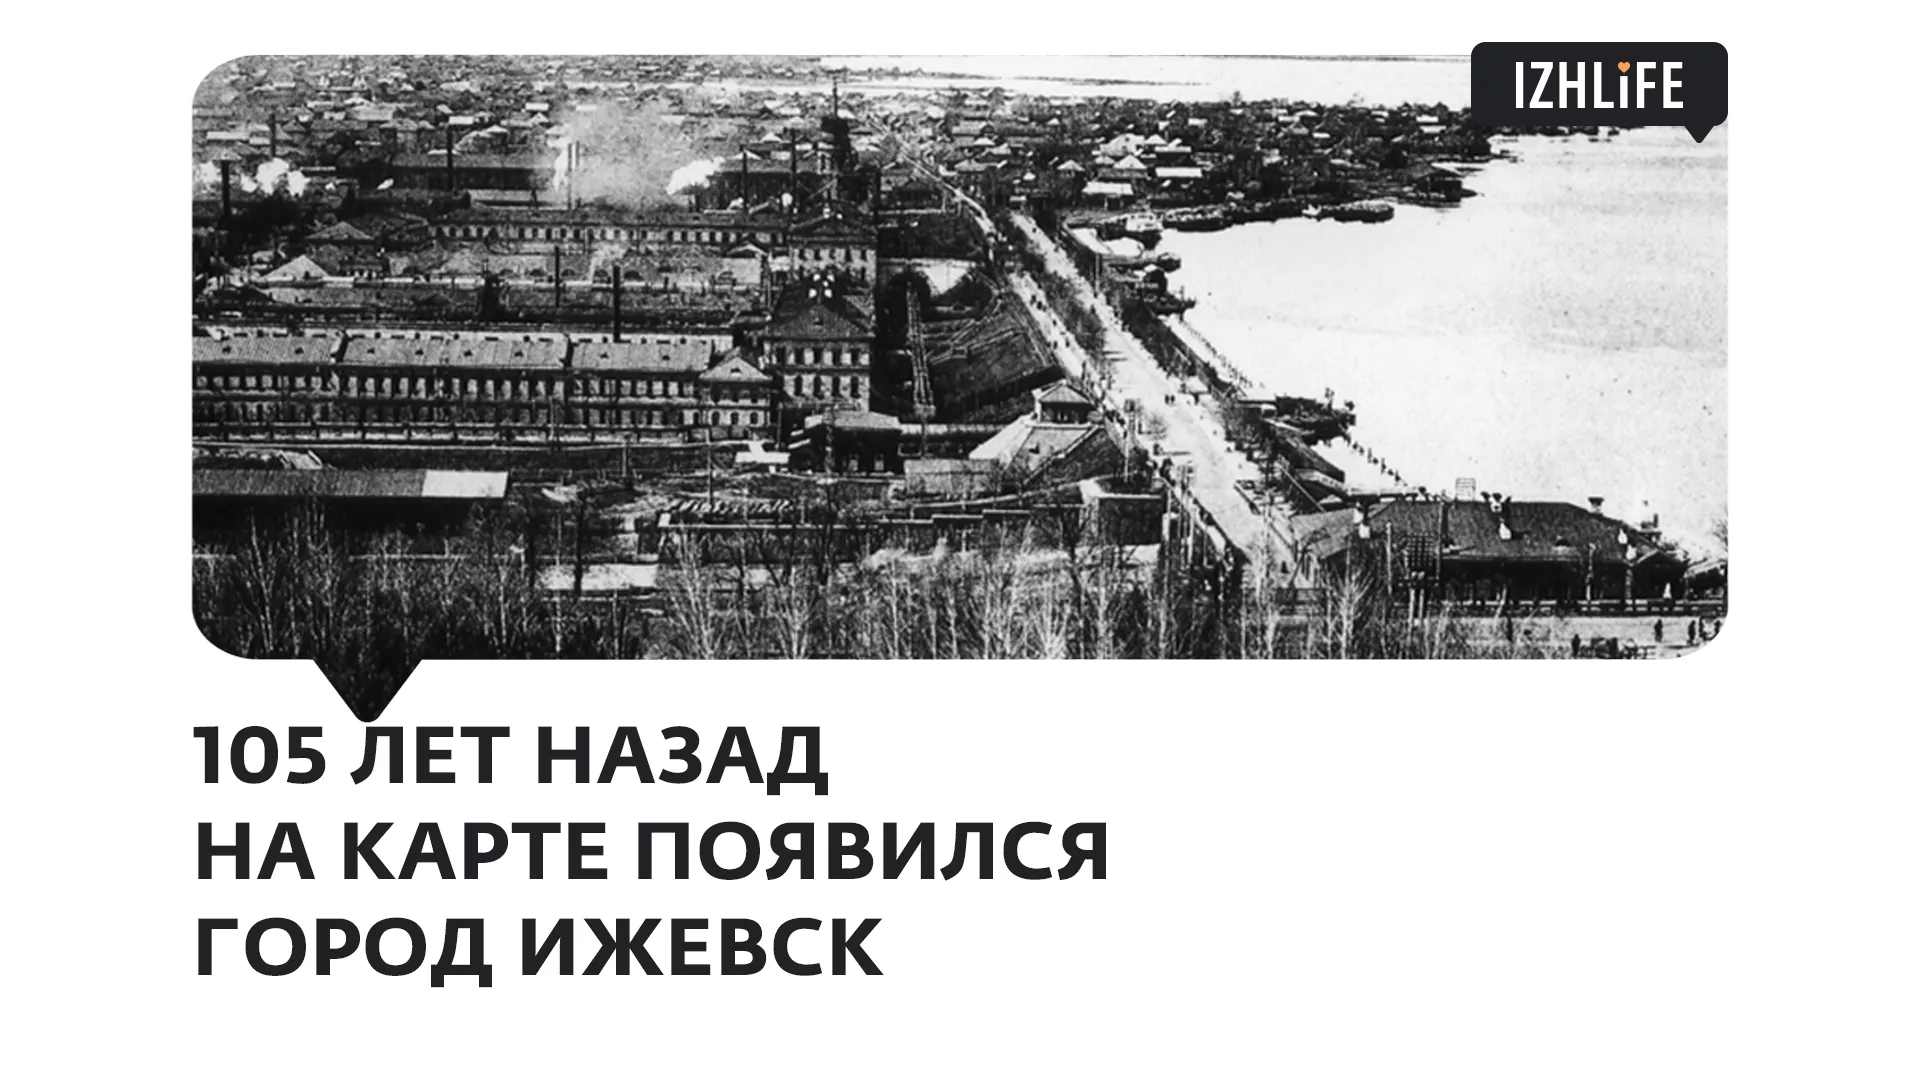 105 лет назад Ижевск стал городом